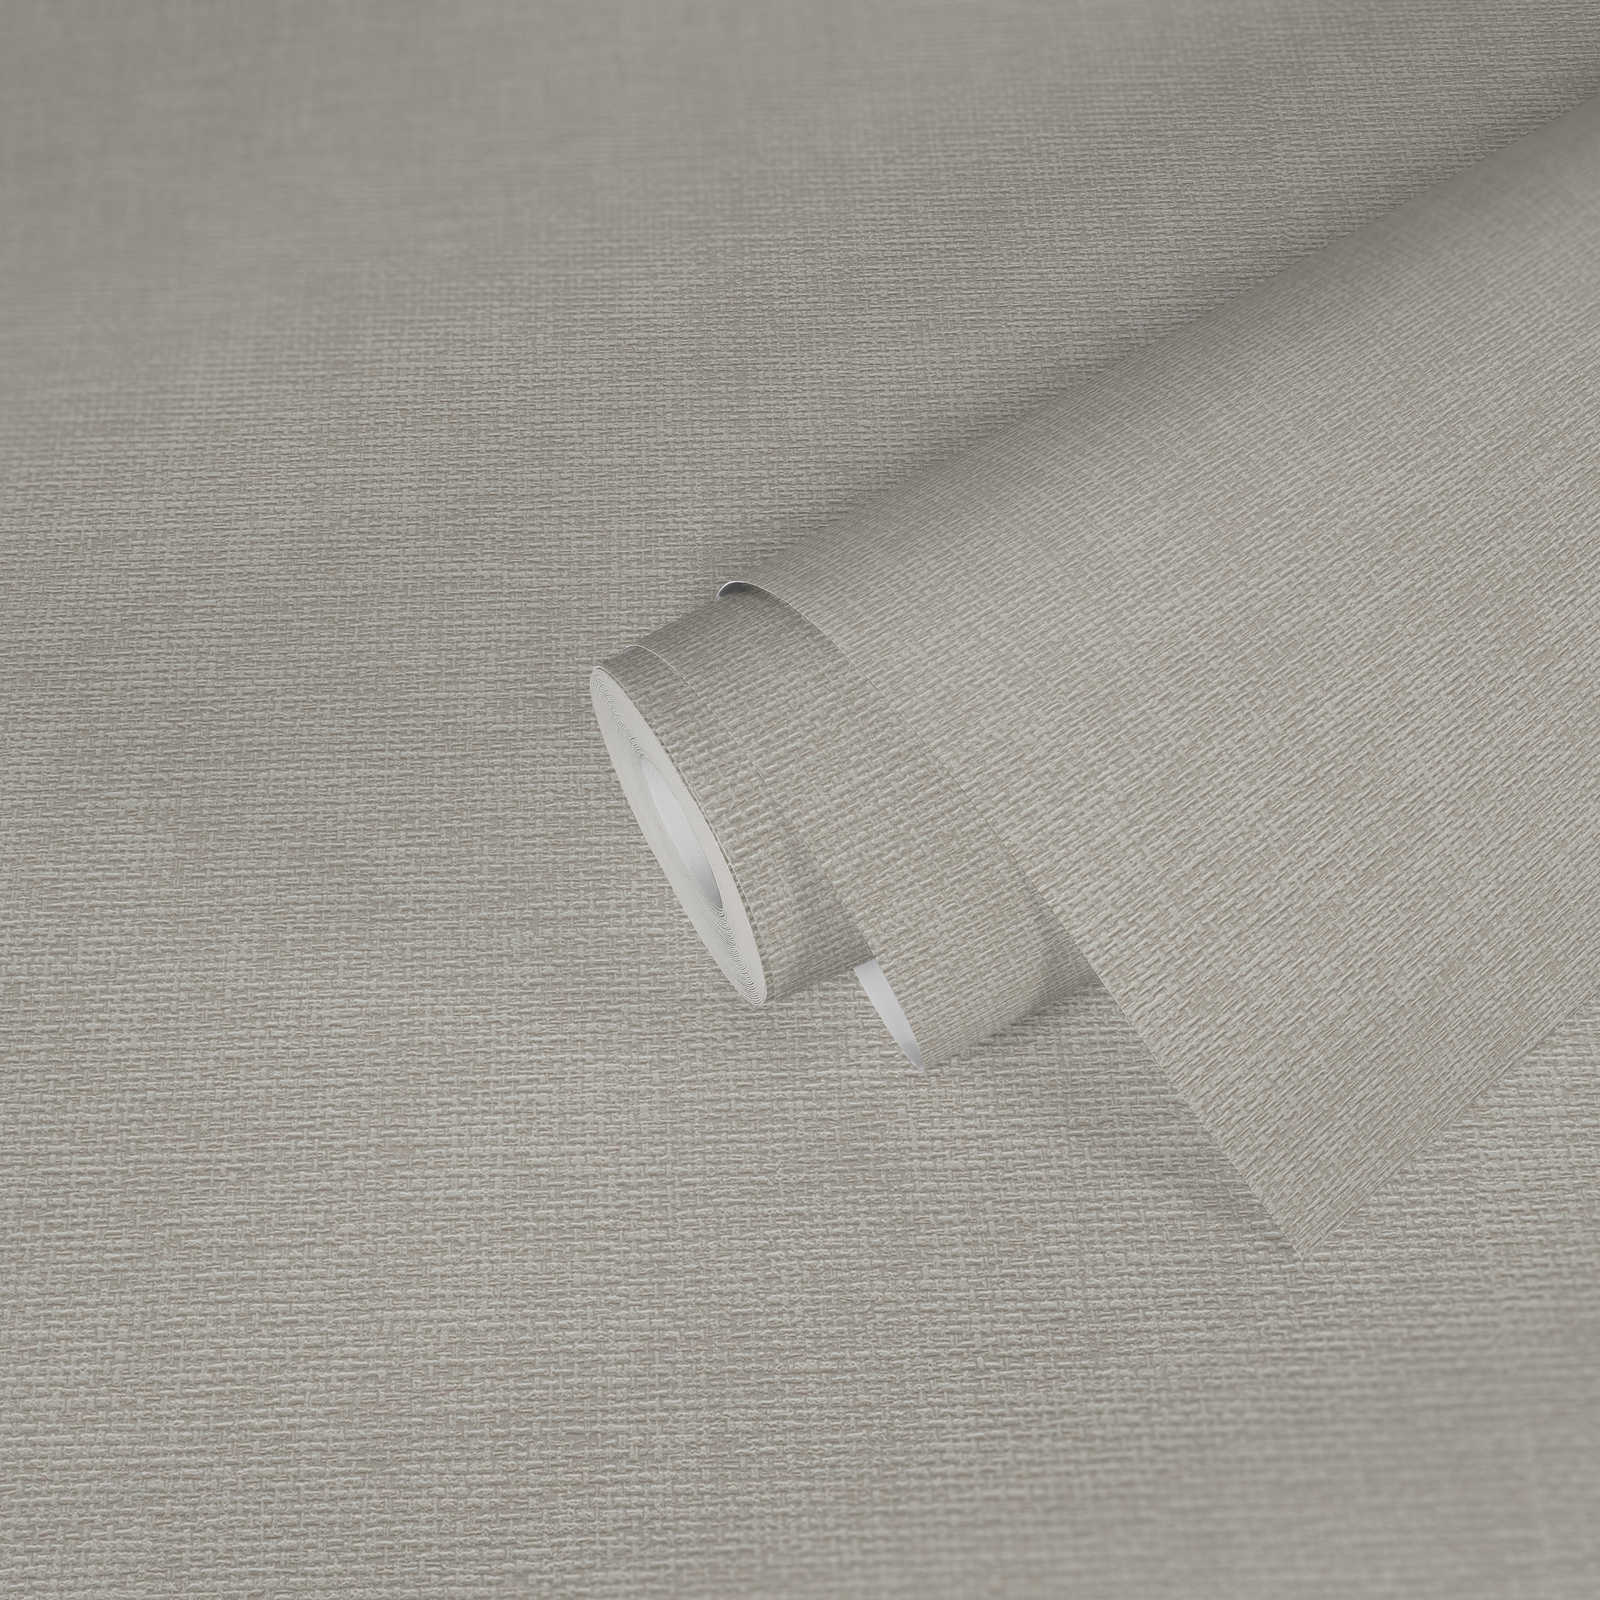             Papier peint design textile avec structure tissée - Gris
        